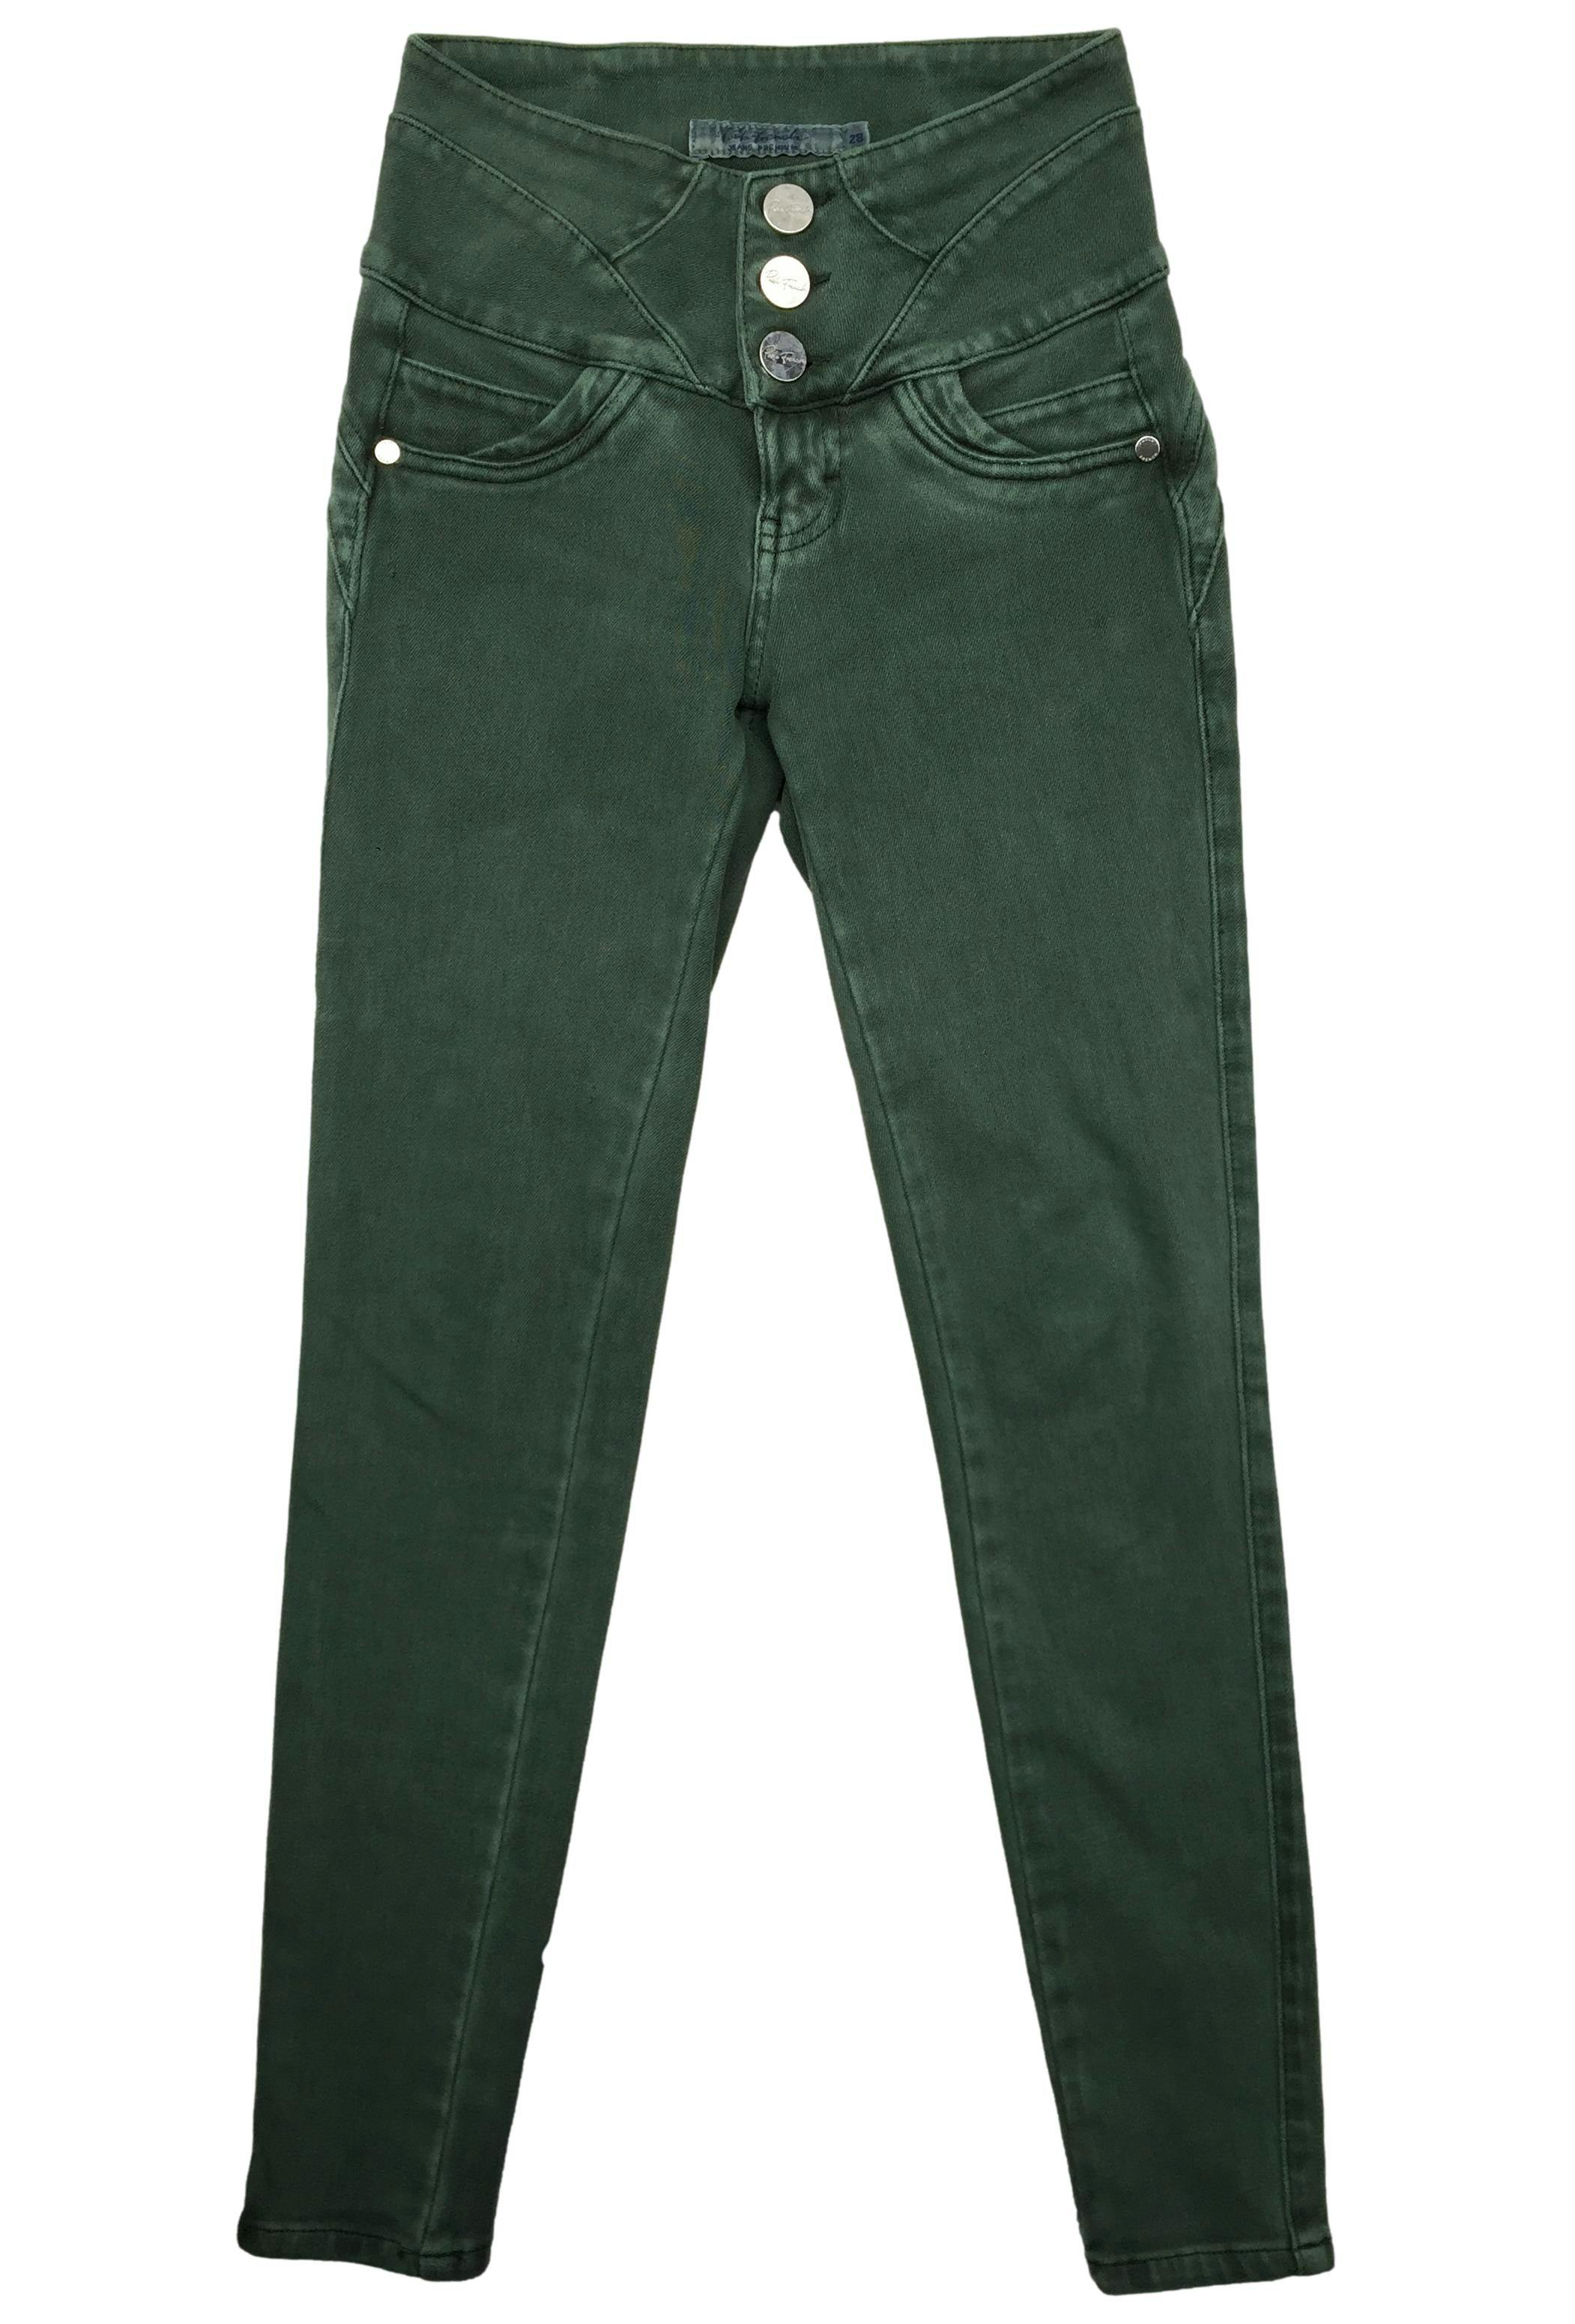 Skinny jean verde Paola French, tela stretch, pretina ancha con botones metálicos, falsos bolsillos y entalle posterior con pinzas. Cintura 60cm sin estirar, Tiro 22cm, Largo 90cm.